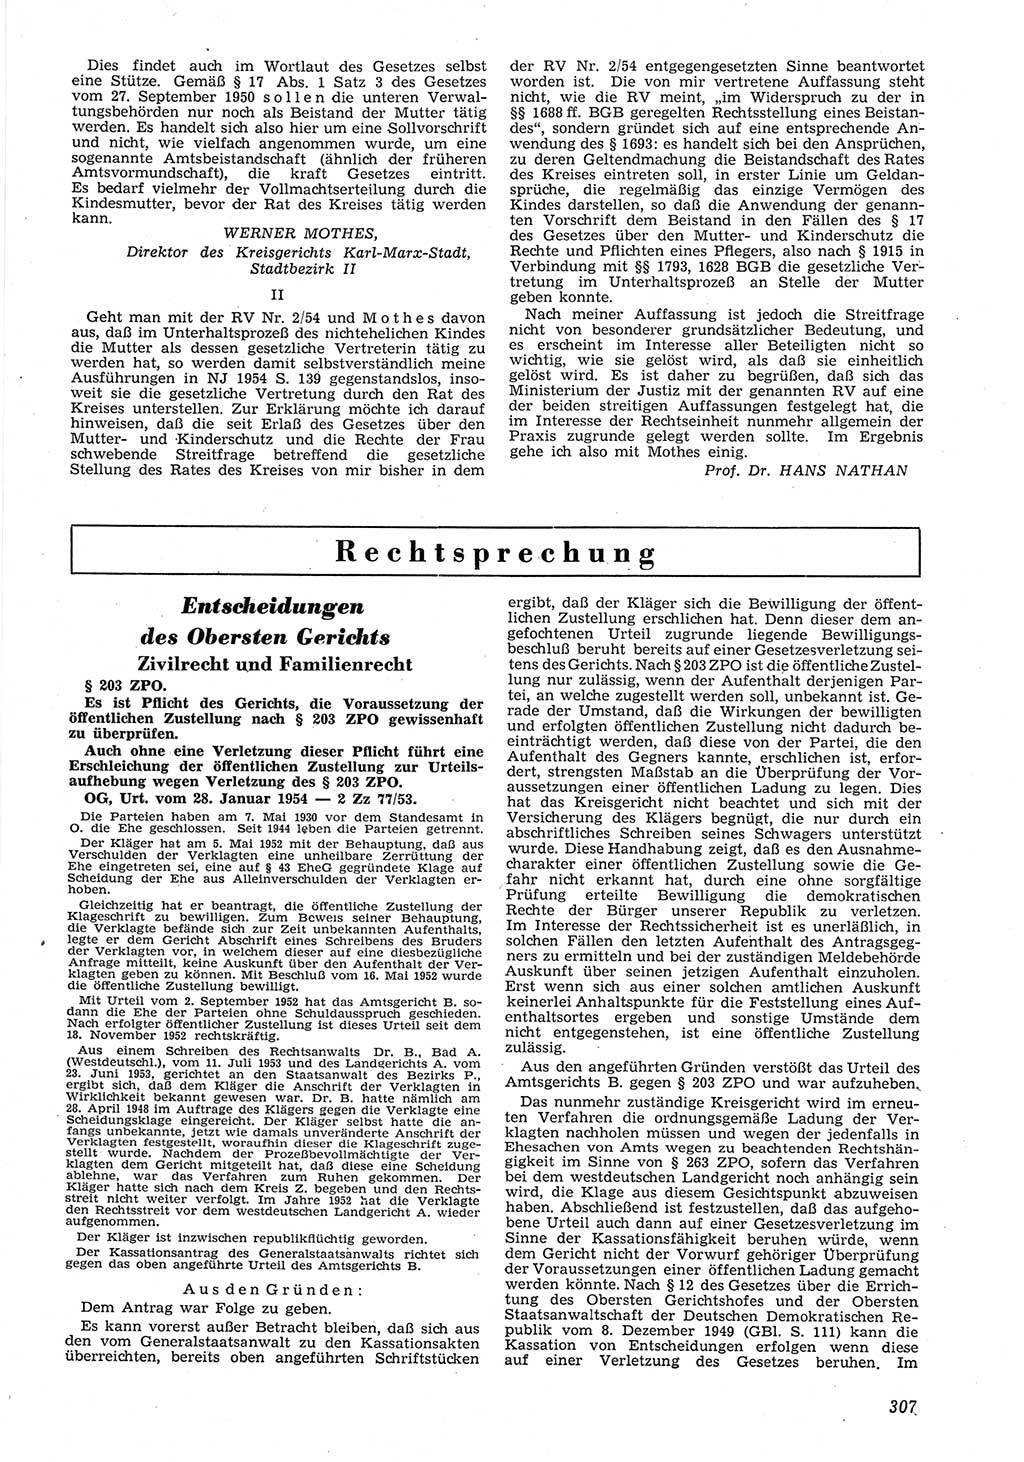 Neue Justiz (NJ), Zeitschrift für Recht und Rechtswissenschaft [Deutsche Demokratische Republik (DDR)], 8. Jahrgang 1954, Seite 307 (NJ DDR 1954, S. 307)